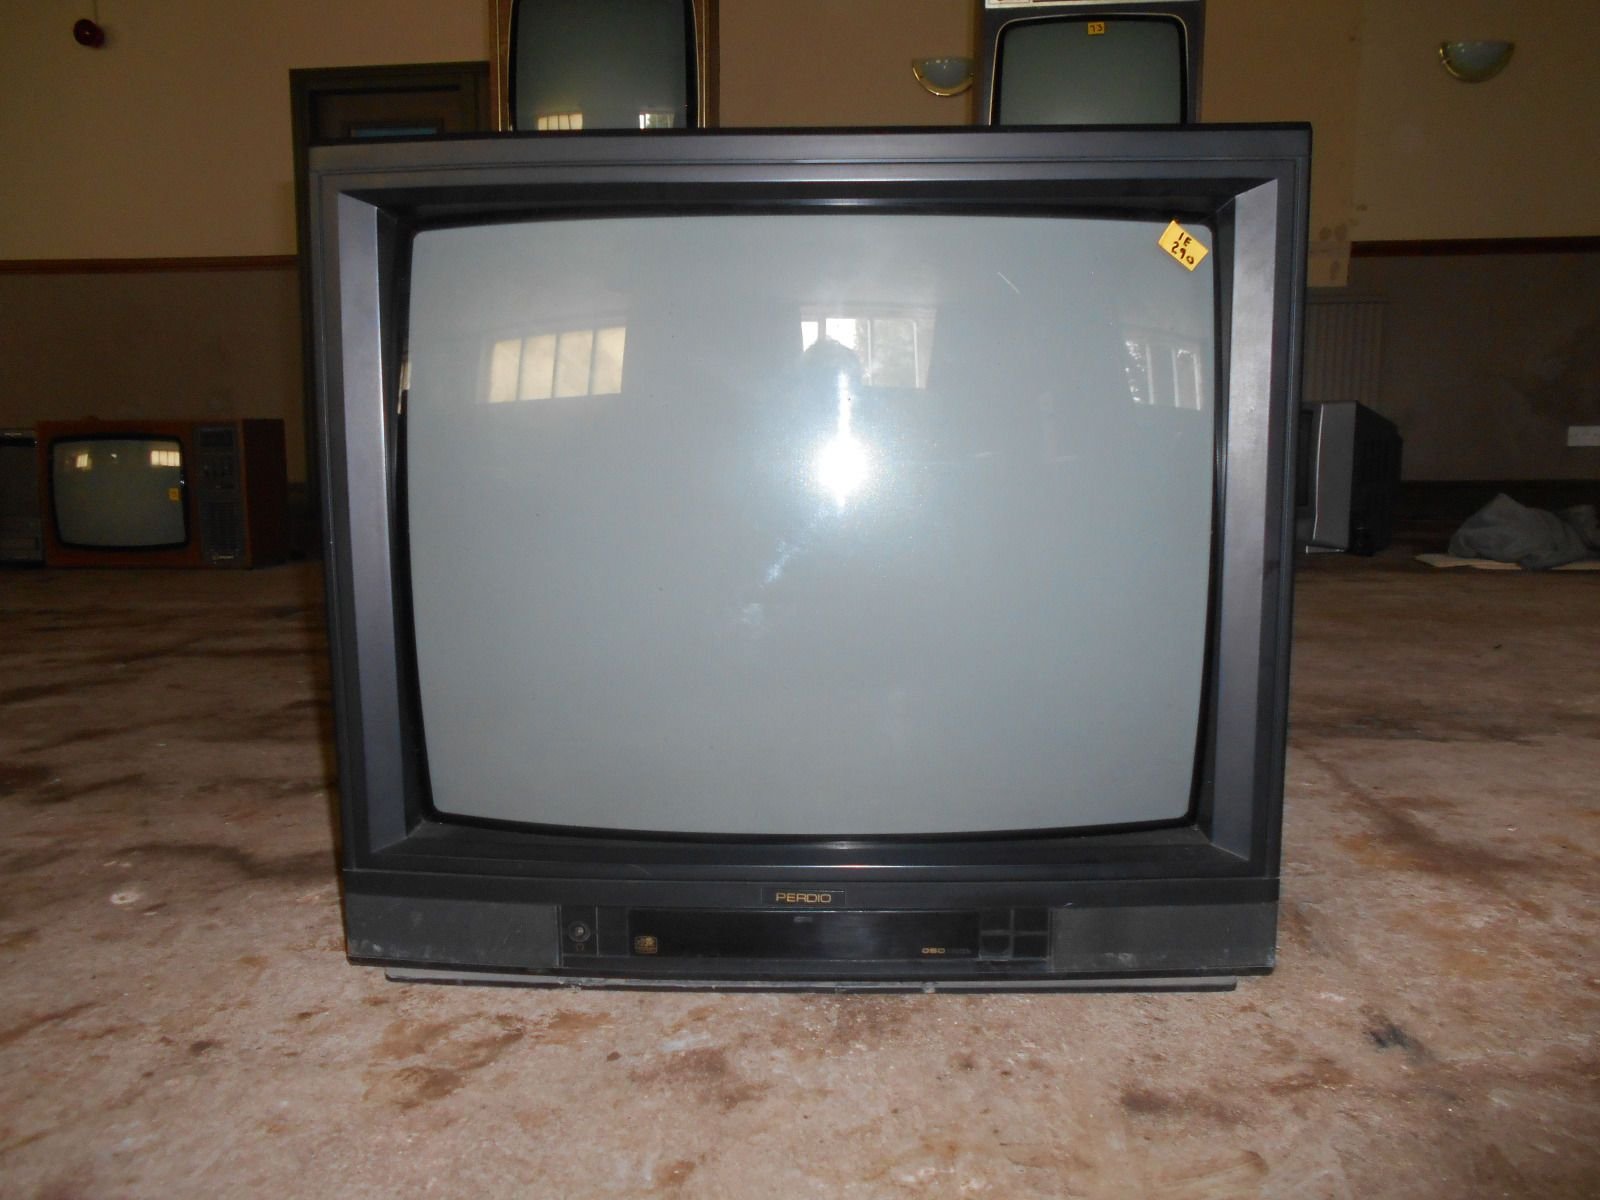 Телевизор 216 см. Телевизор Waltham WT 821 OC. Телевизор Waltham TS 4351. Телевизор Сименс 1990. Panasonic телевизор 1993 года.